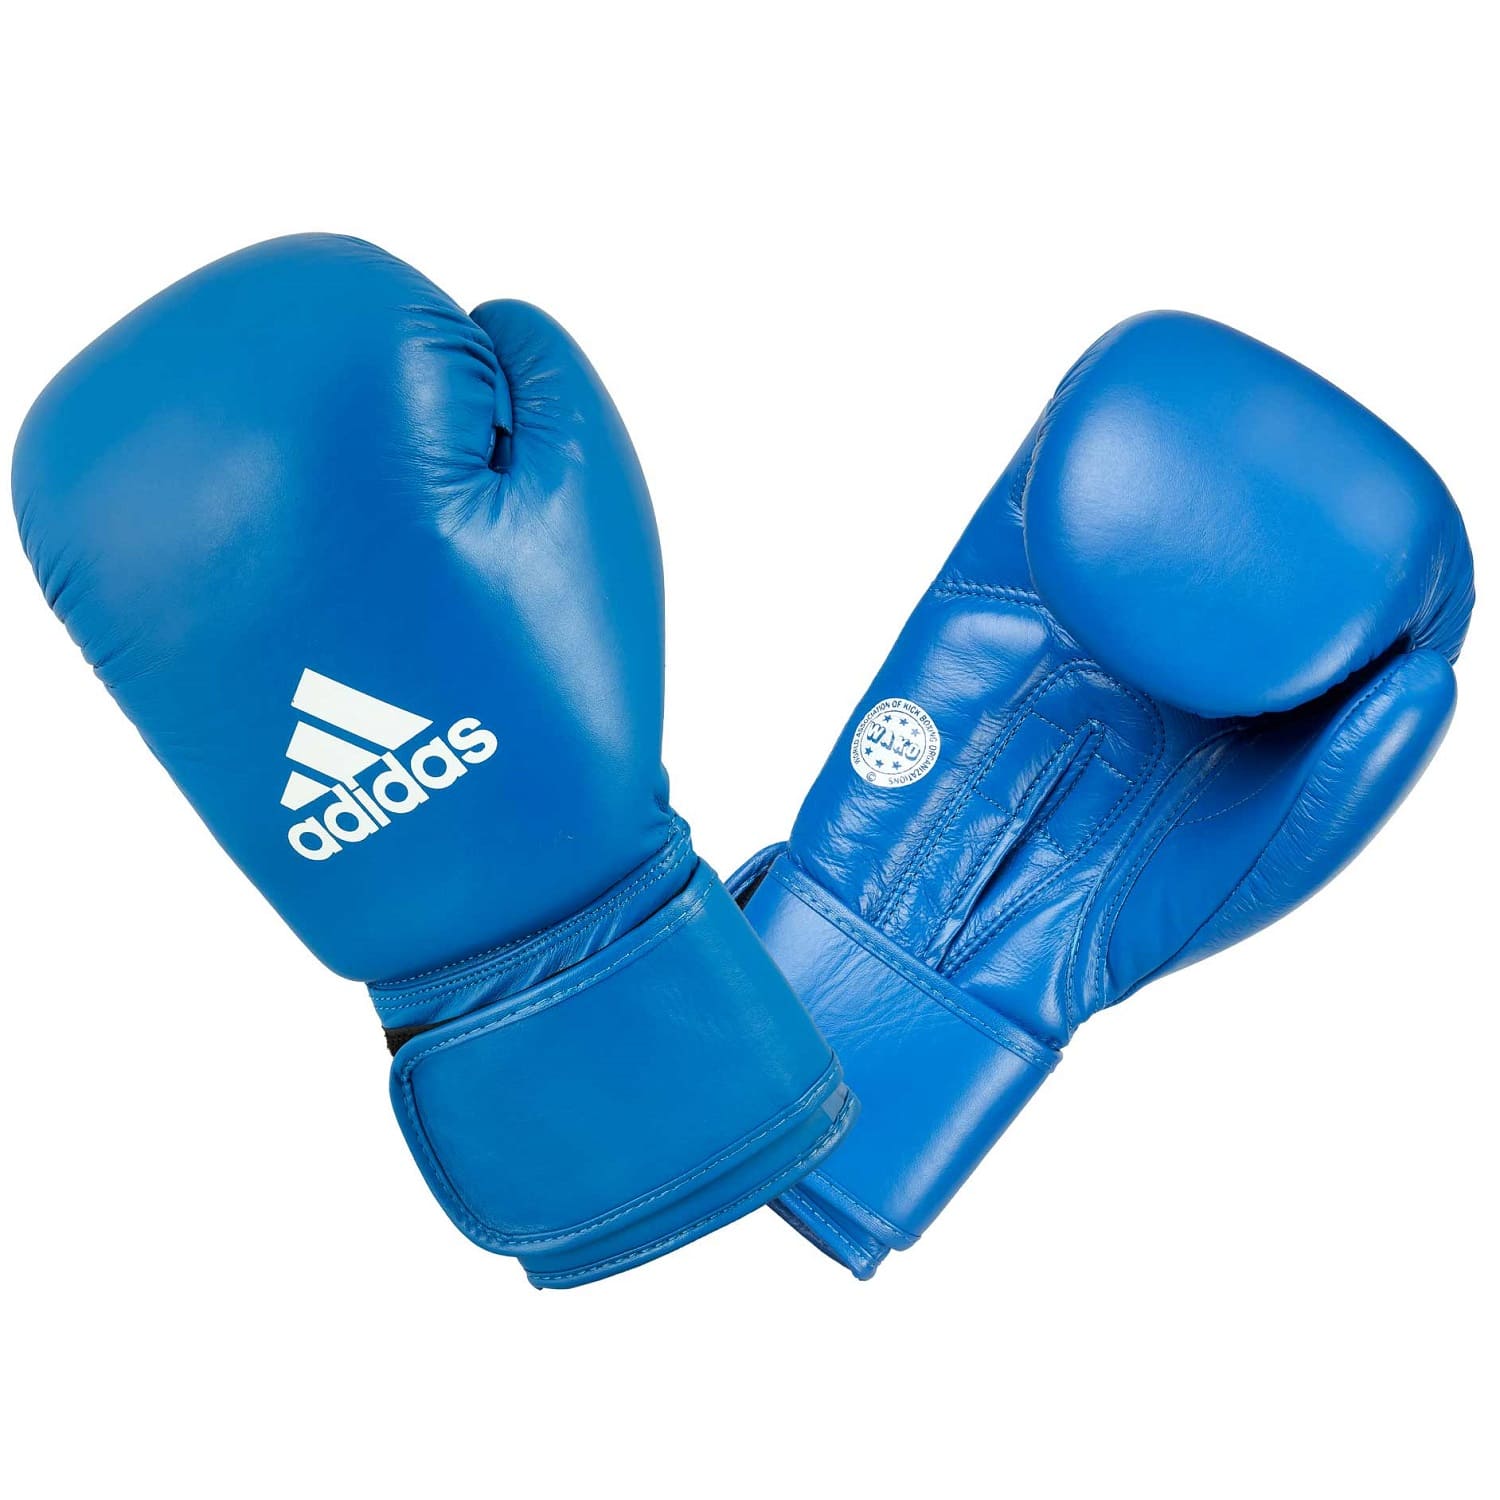 Adidas Boxhandschuhe WAKO Blau Leder 10oz Online kaufen ✓ | EMPAROR